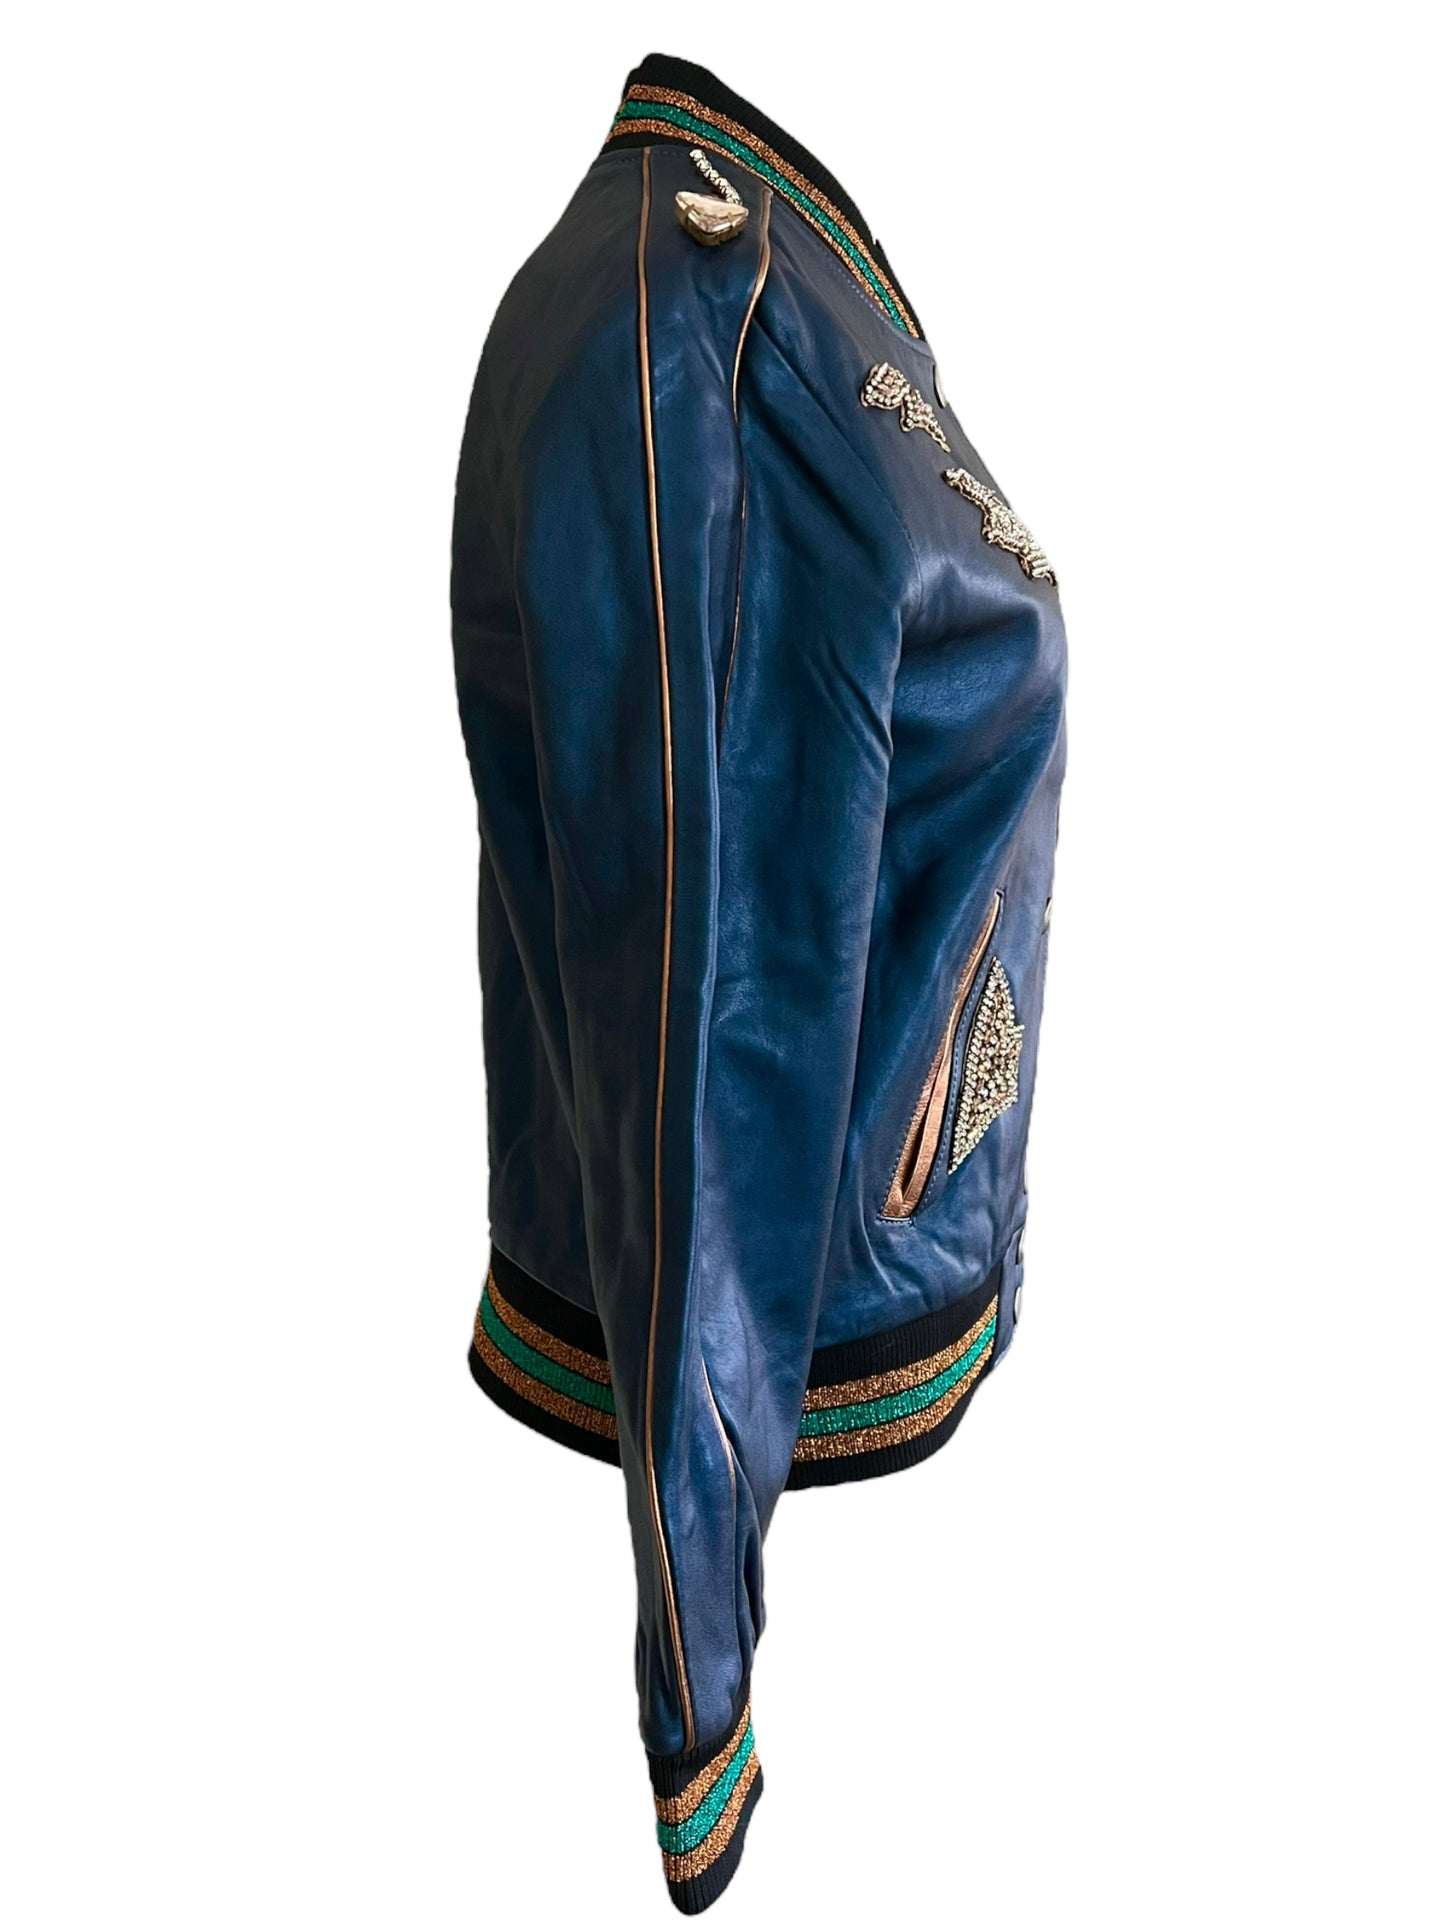 Coach Size 2 Metallic Leather Cadet Blue Shrunken Leather Embellished Varsity Jacket